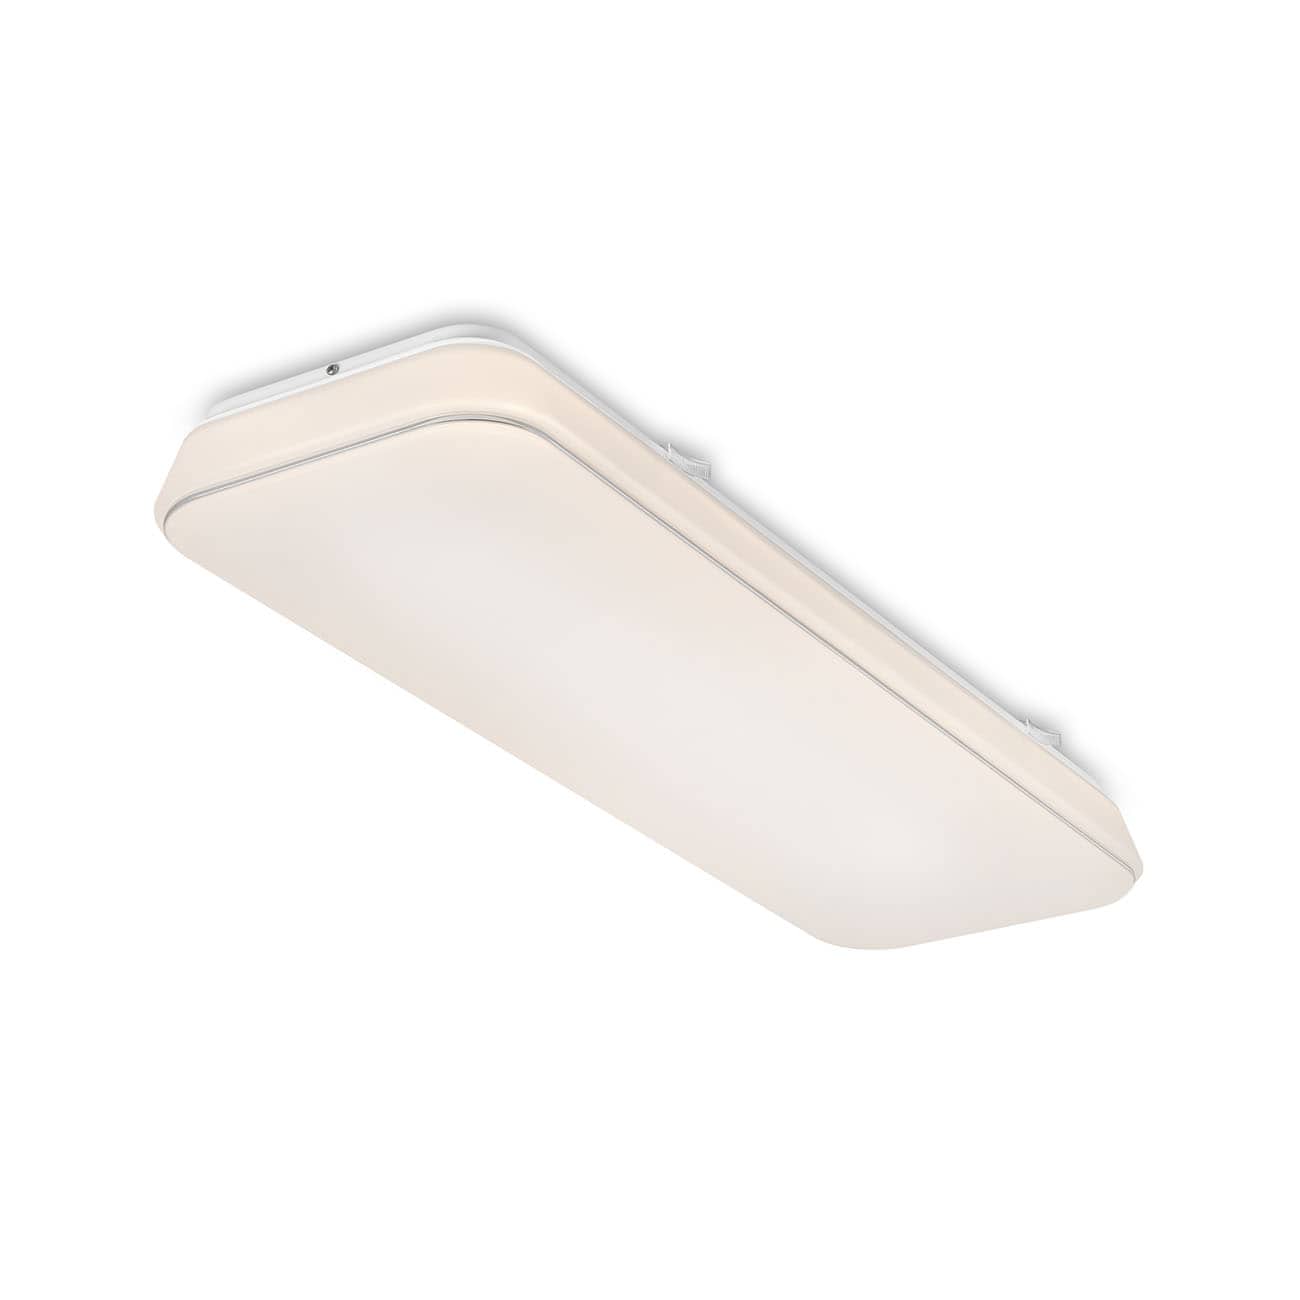 LED Ceiling light 60,7 cm 24W 2800lm white